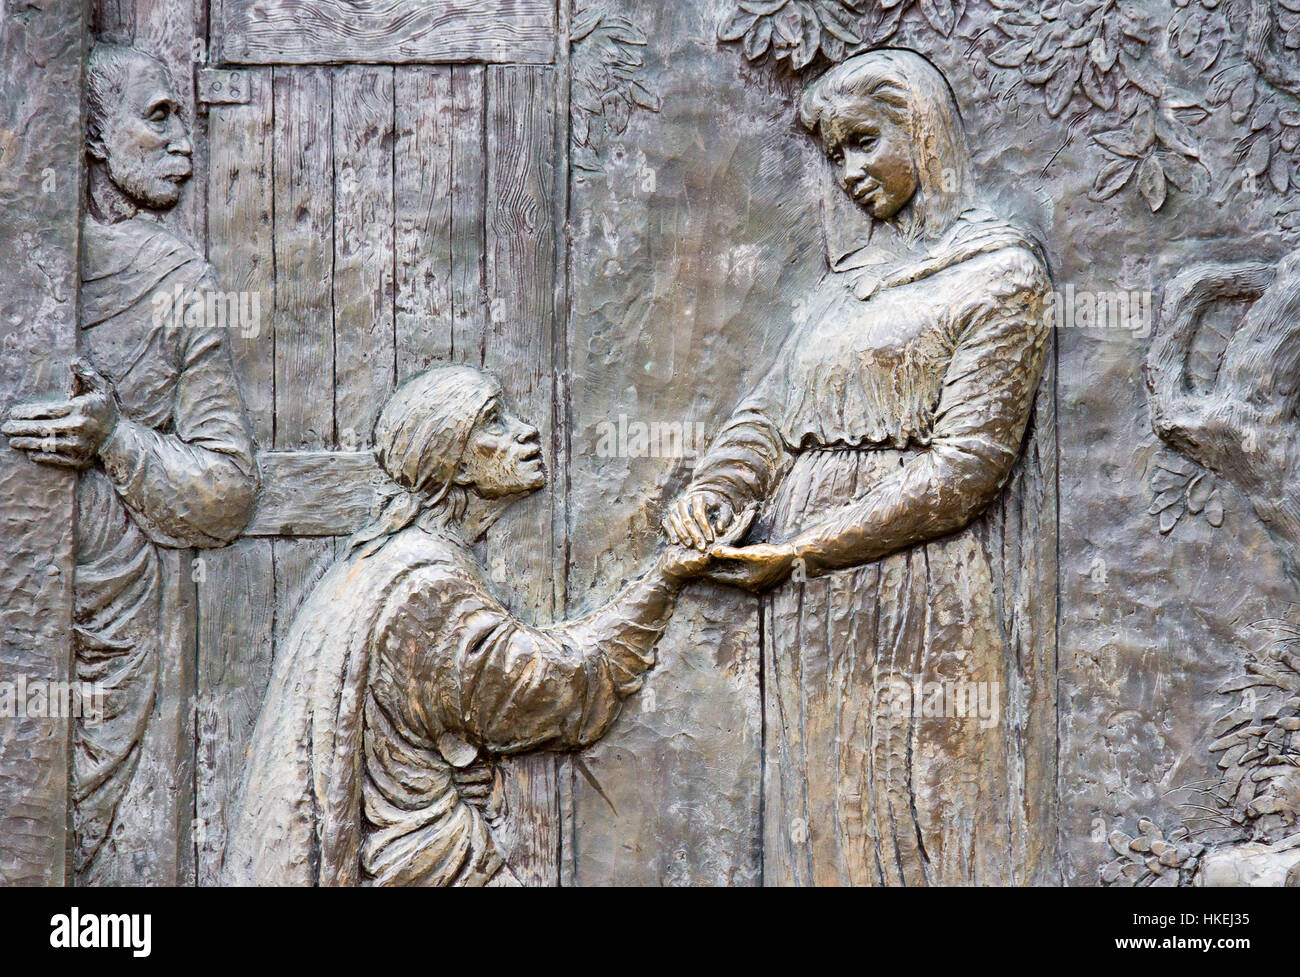 Rilievo bronzeo che rappresenta la Visitazione di Santa Elisabetta dalla Vergine Maria. Medjugorje, Bosnia e Erzegovina, 2016/11/12. Foto Stock